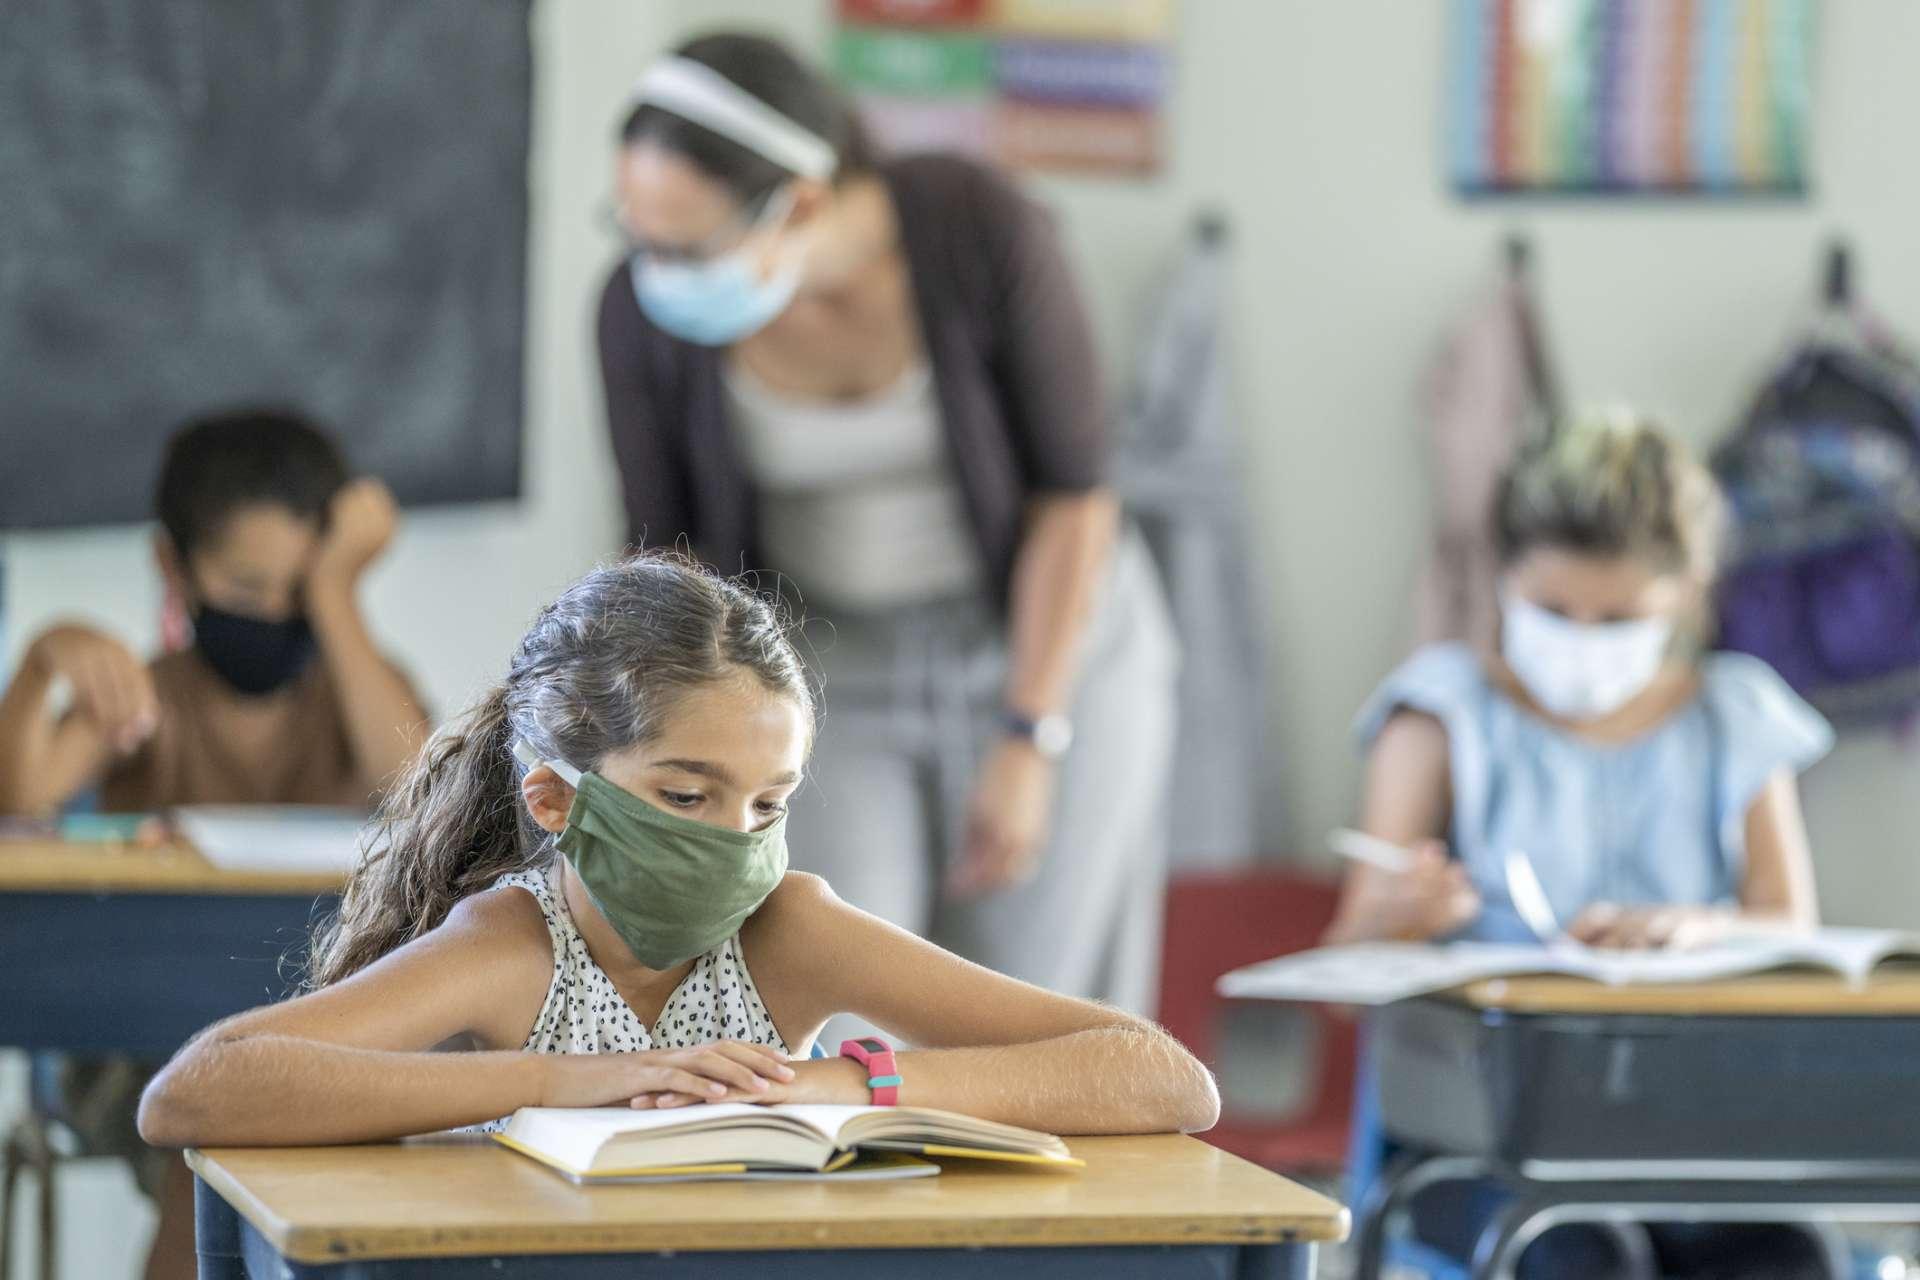 12 Jahre altes Mädchen, das eine wiederverwendbare, schützende Gesichtsmaske im Klassenzimmer trägt, während an der Schularbeit an ihrem Schreibtisch gearbeitet wird.